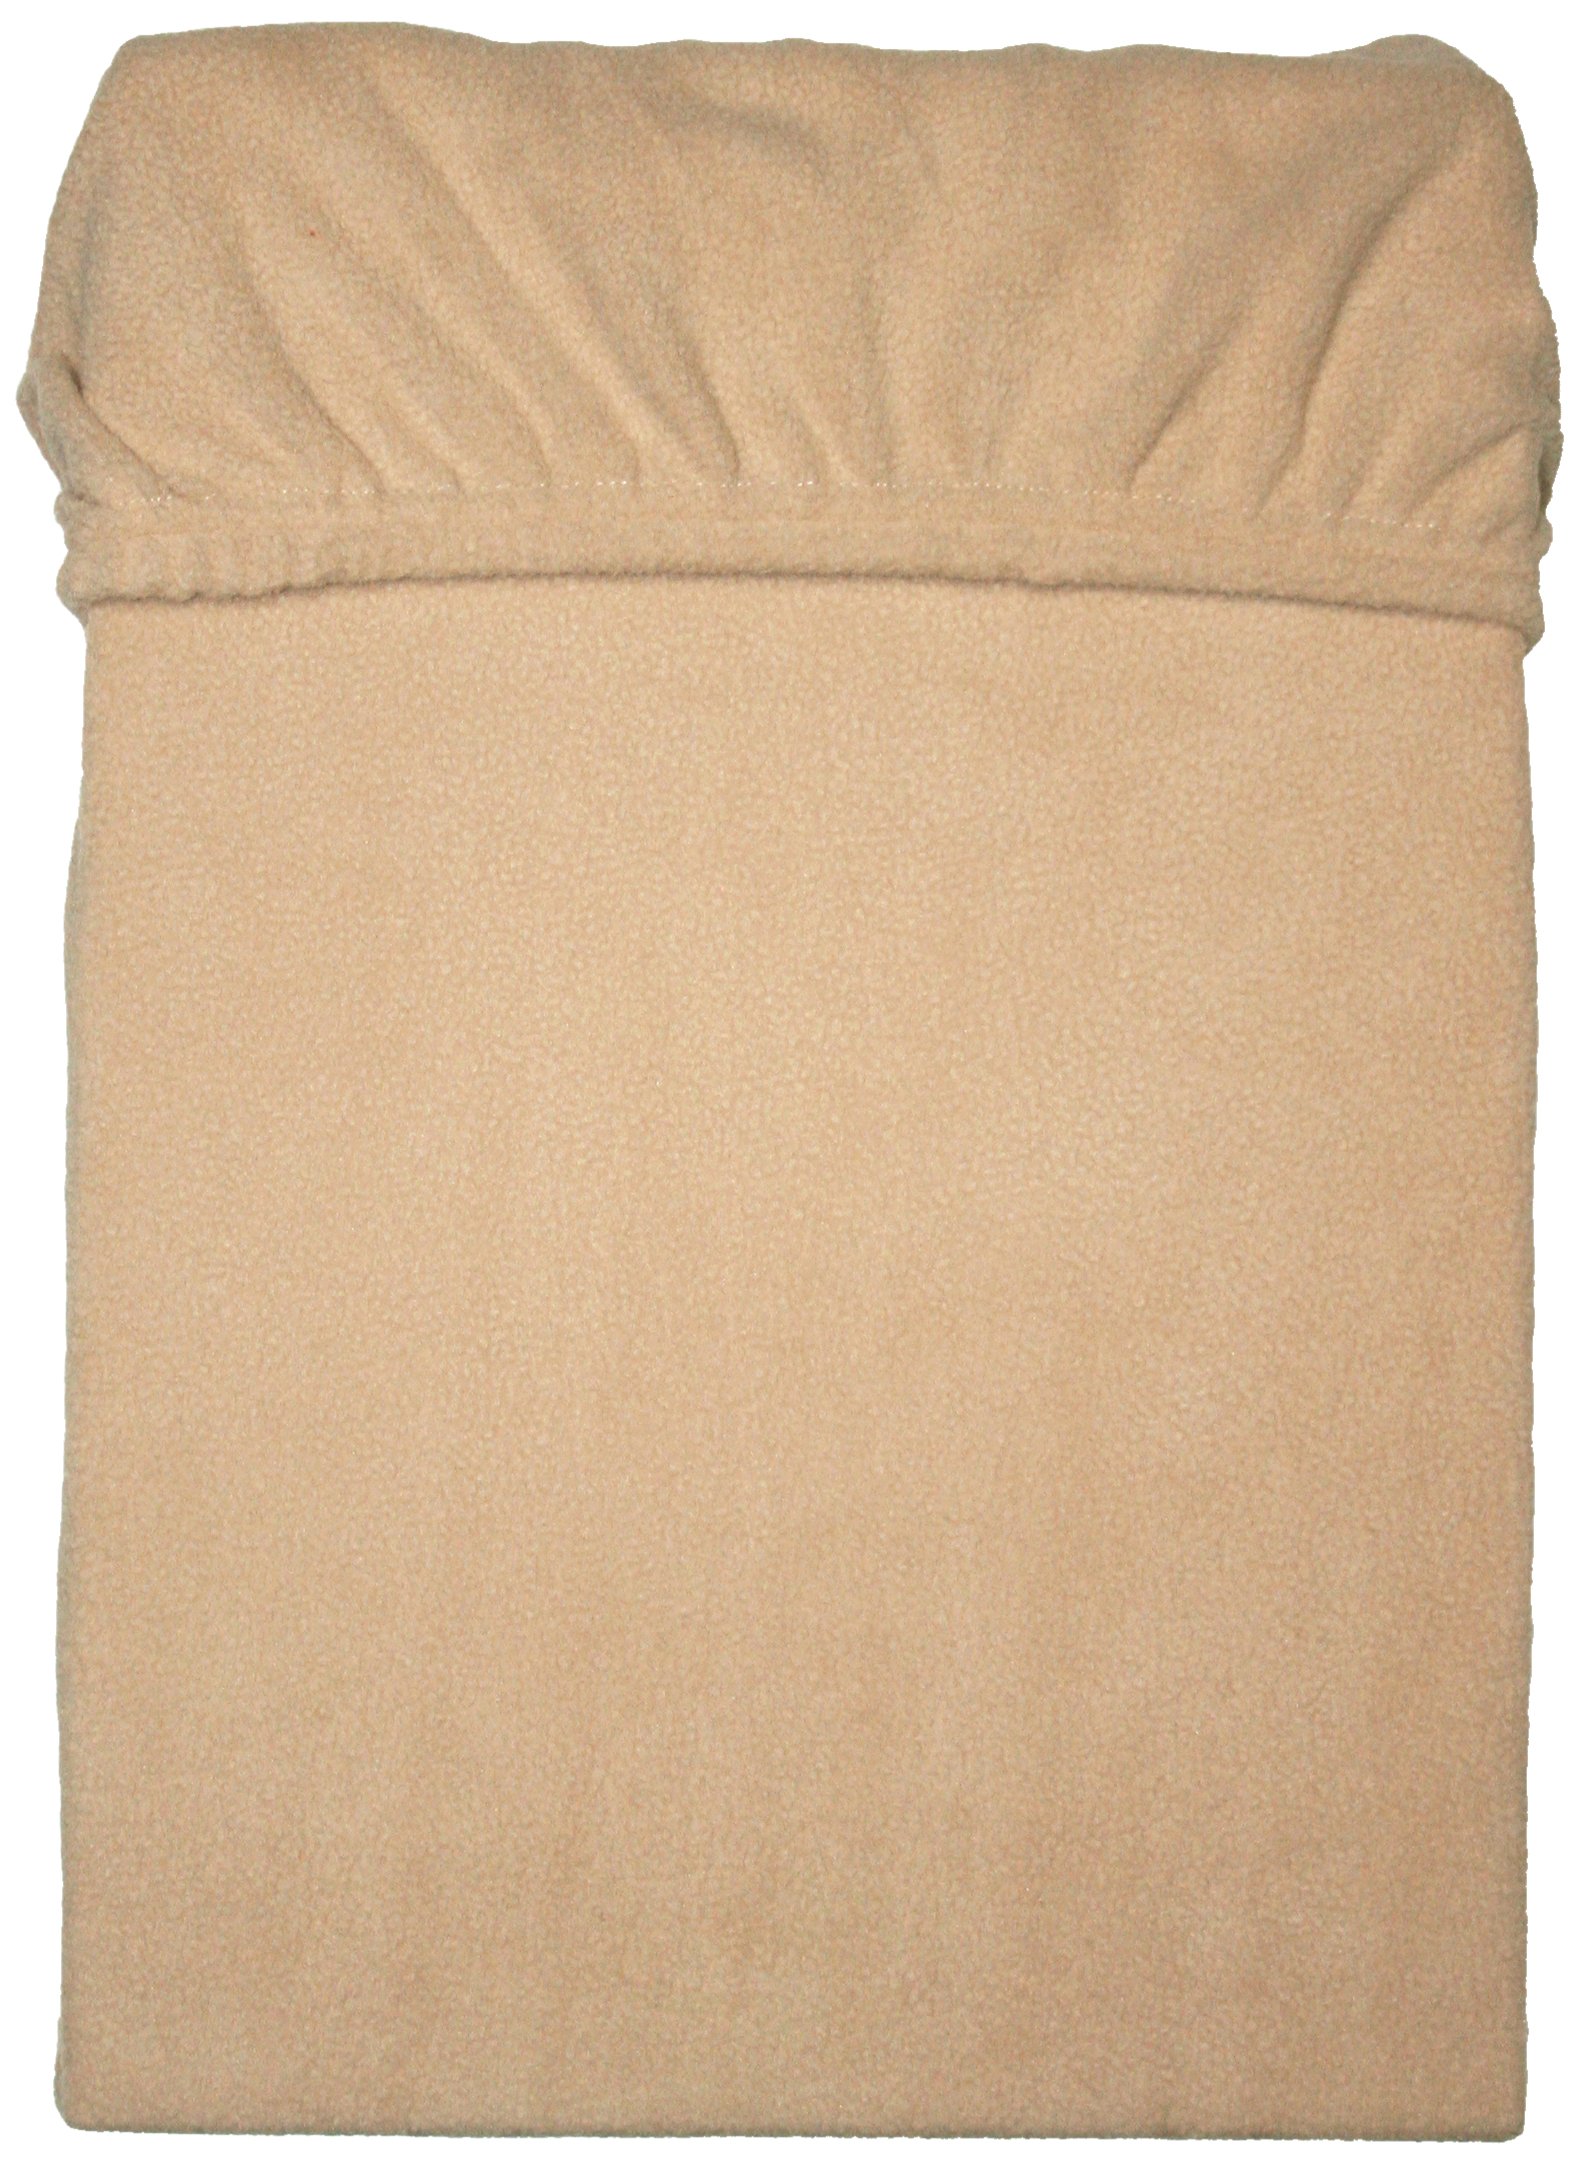 Mesana C-10003/02 Mikrofaser Fleece Spannbetttuch 140 - 160 x 200 cm, kuschelig weich und warm, viele Farben, beige